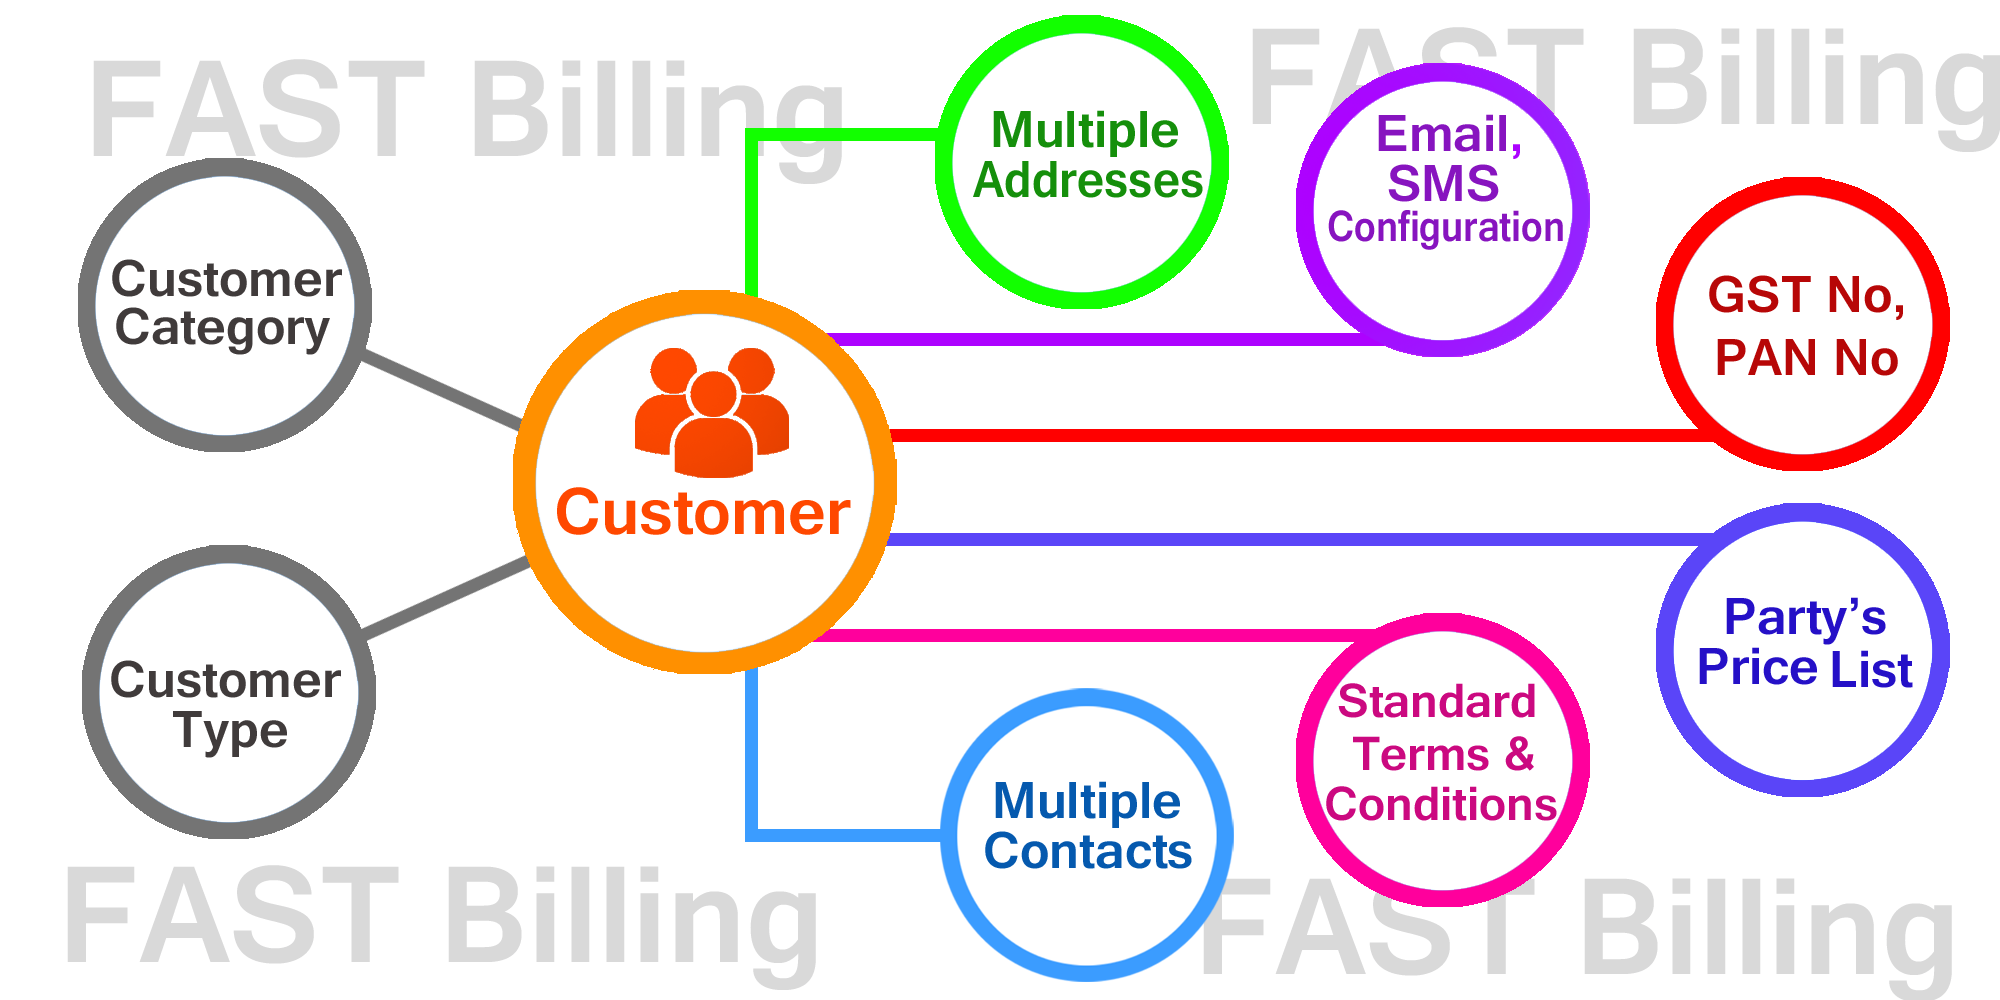 fast billing billing customer master 